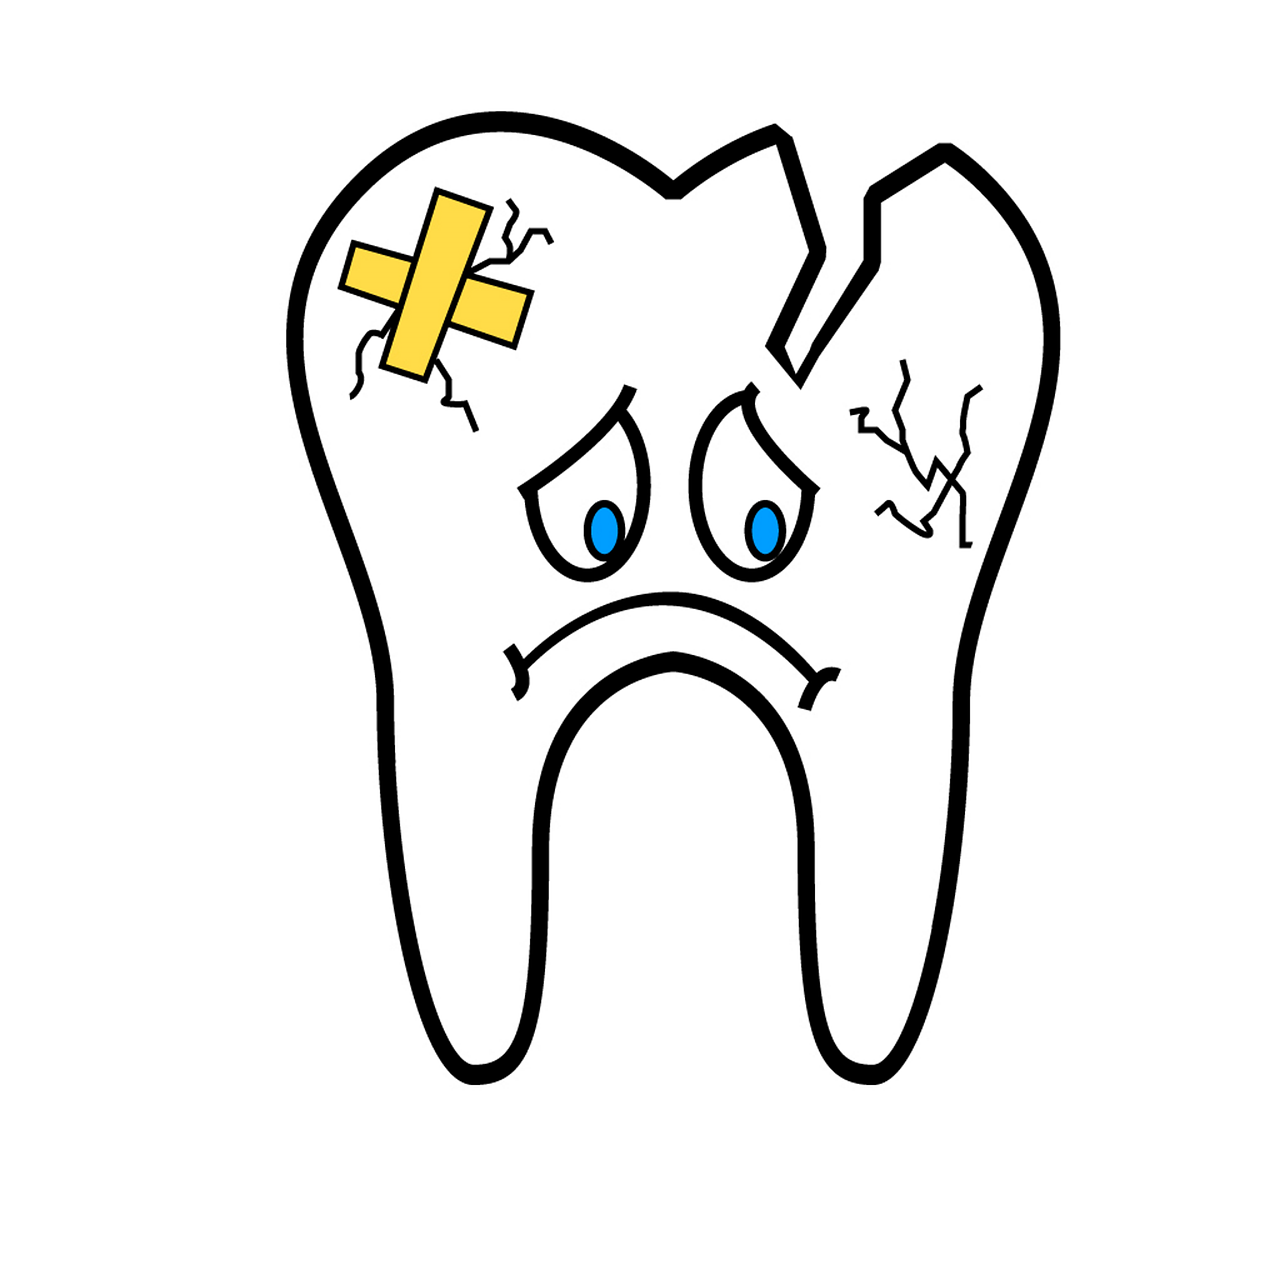 Broken tooth